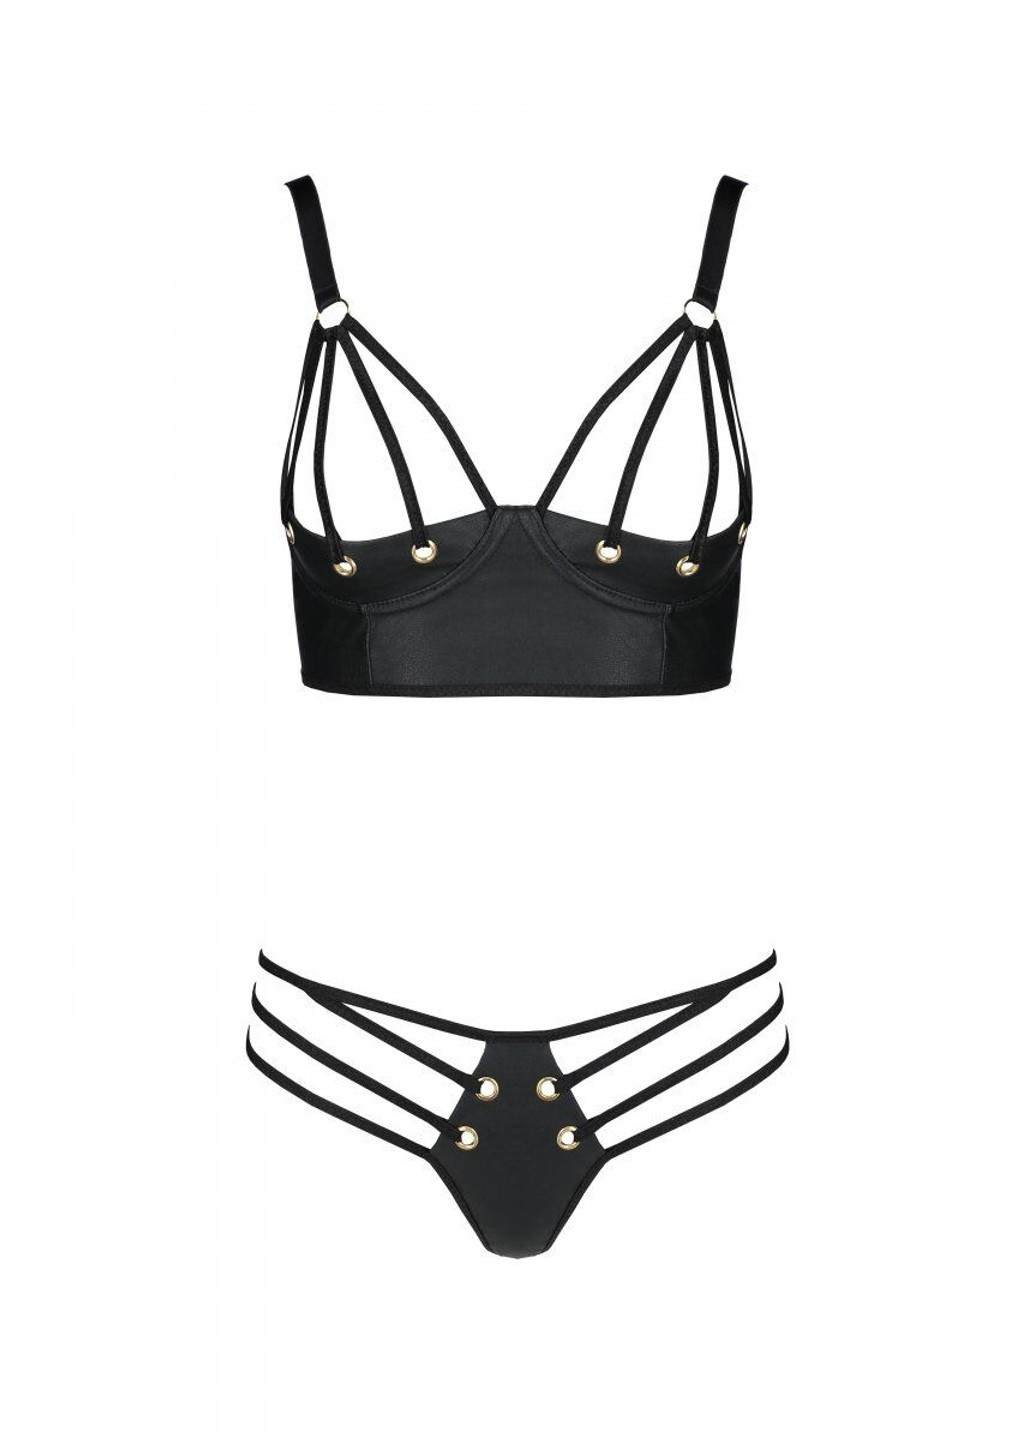 Комплект из эко-кожи Malwia Bikini black L/XL: с люверсами и ремешками, бра и трусики Passion (255459627)